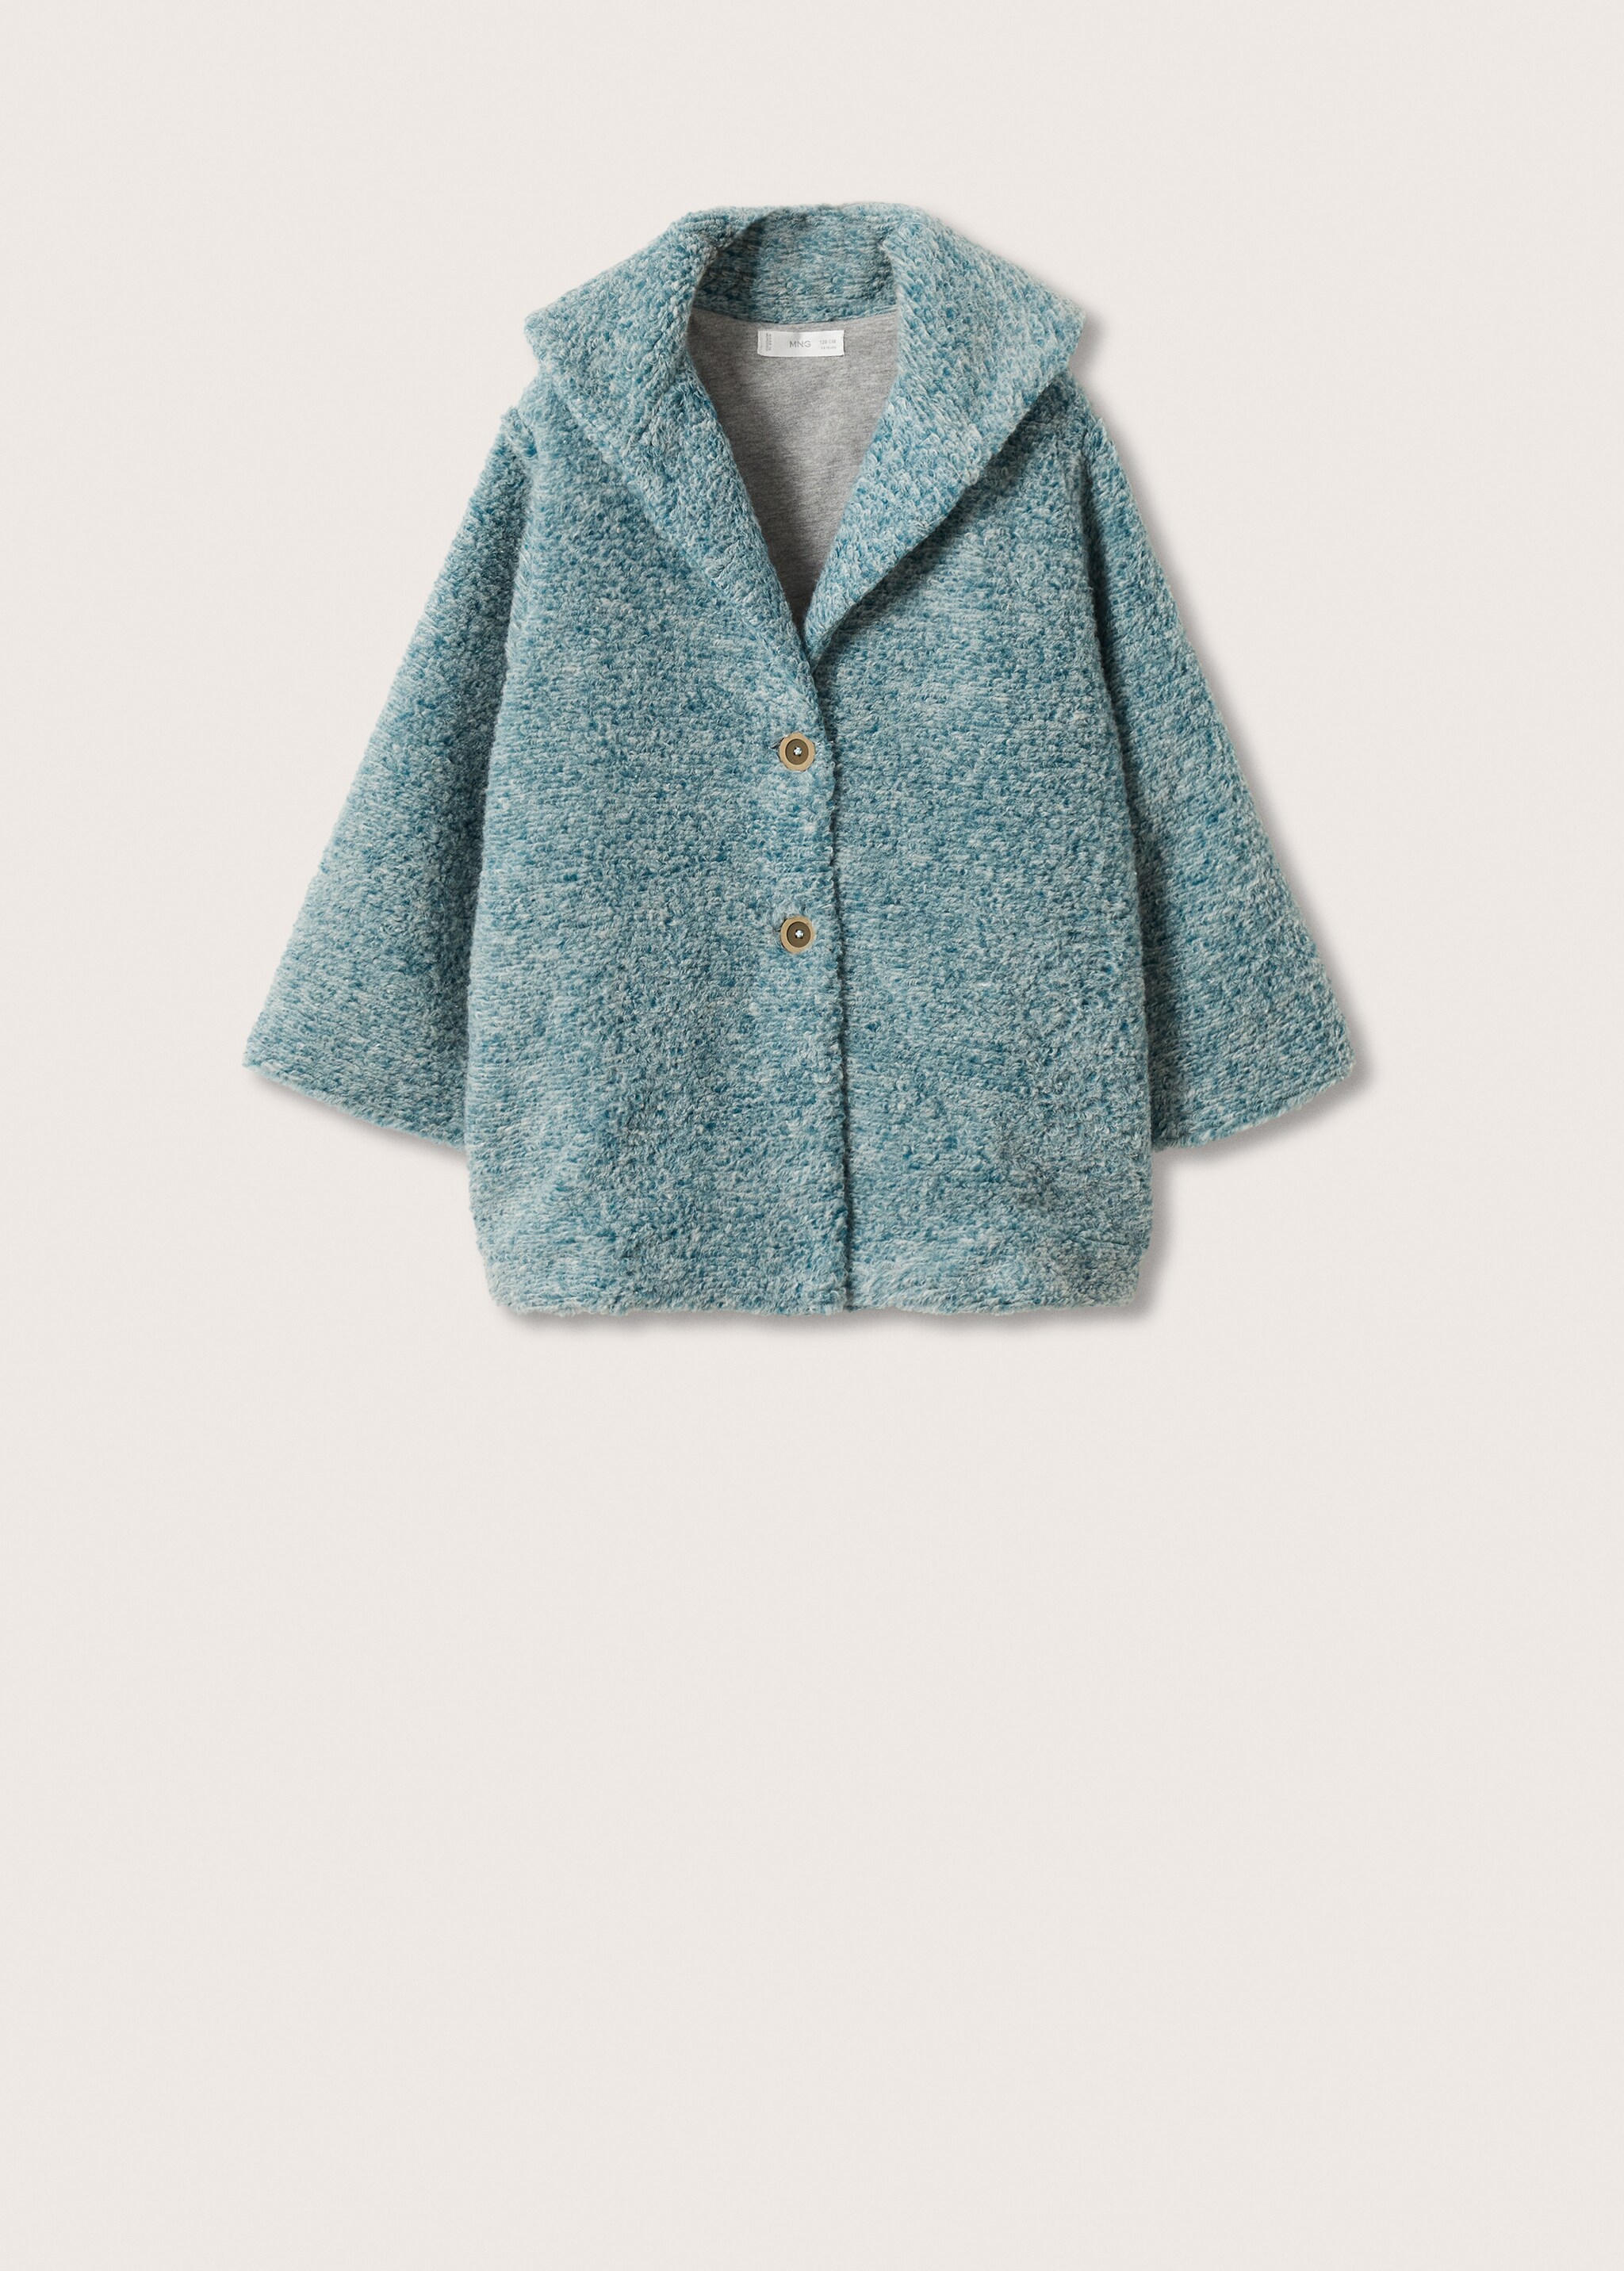 Fur bouclé wool coat - Article without model